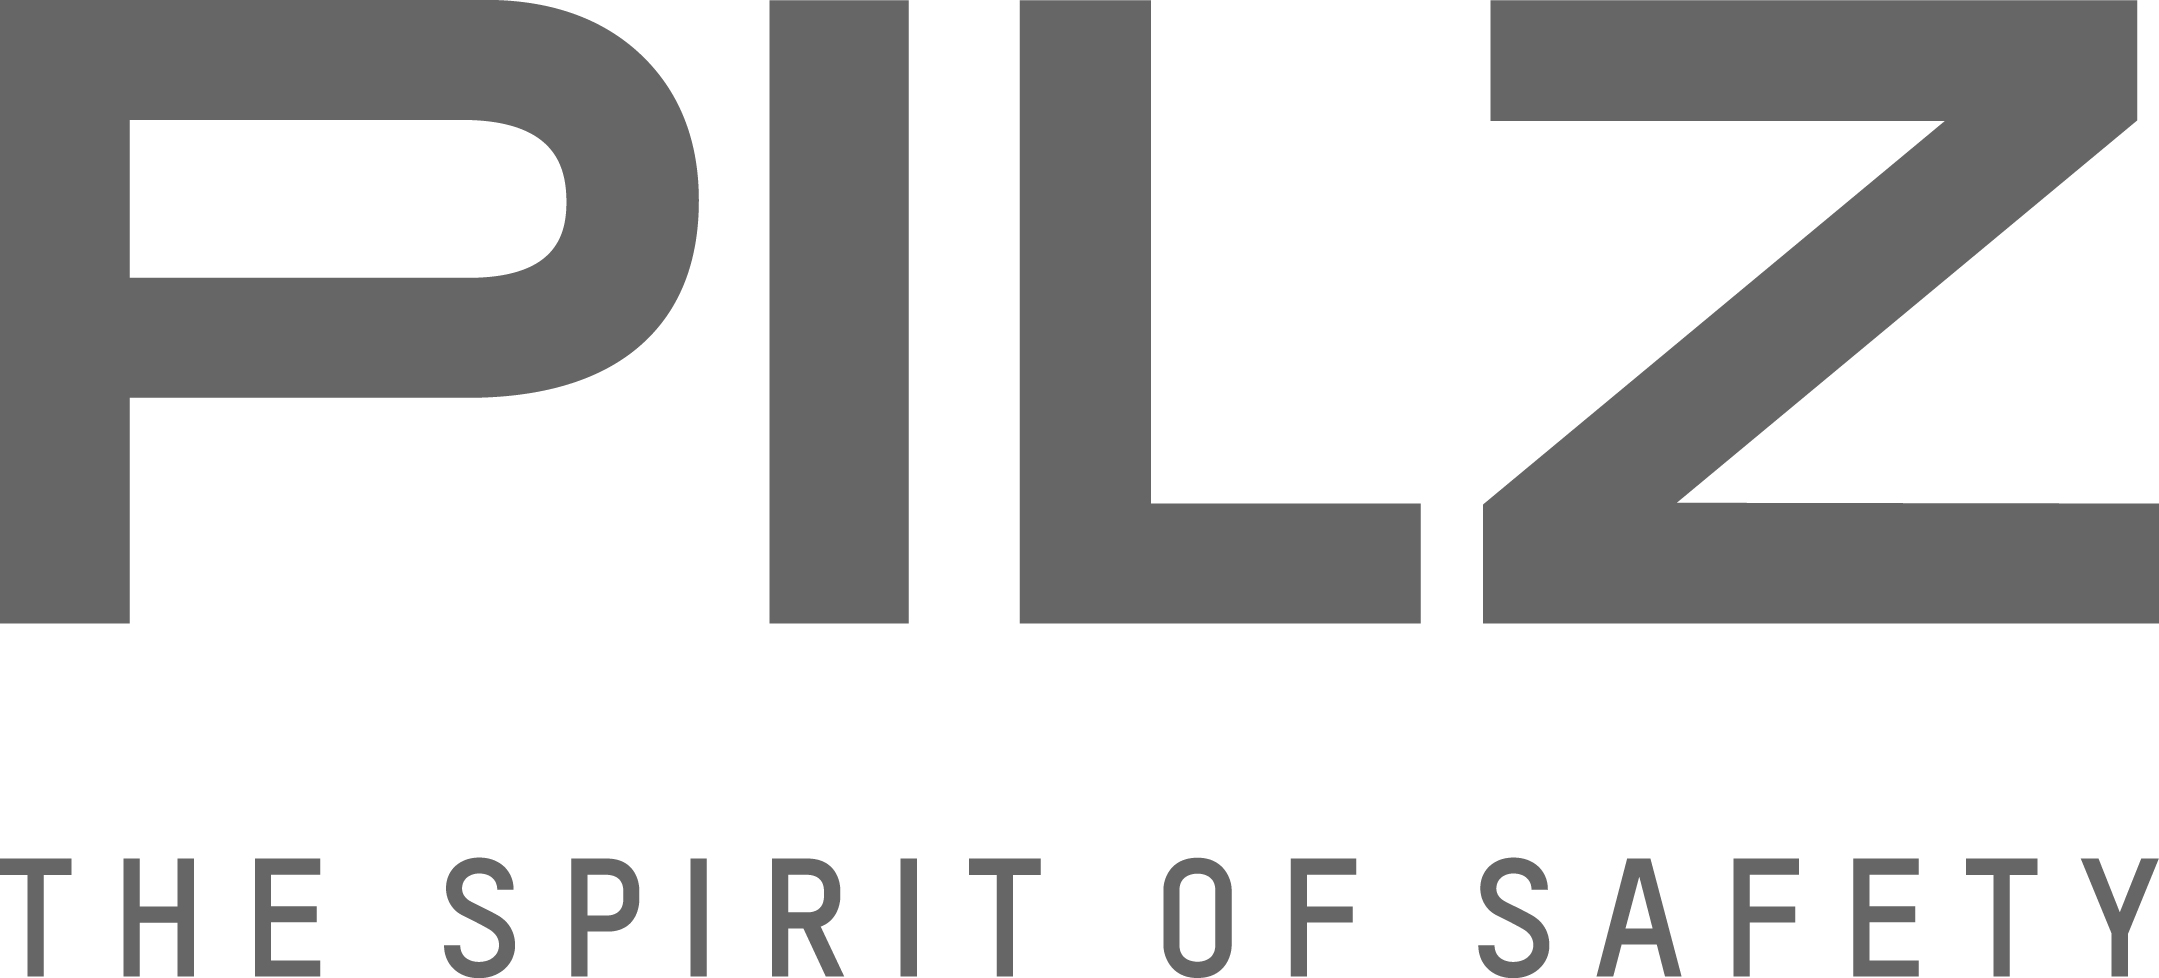 PILZ ofrece webinars gratuitos y sesiones de formación en youtube